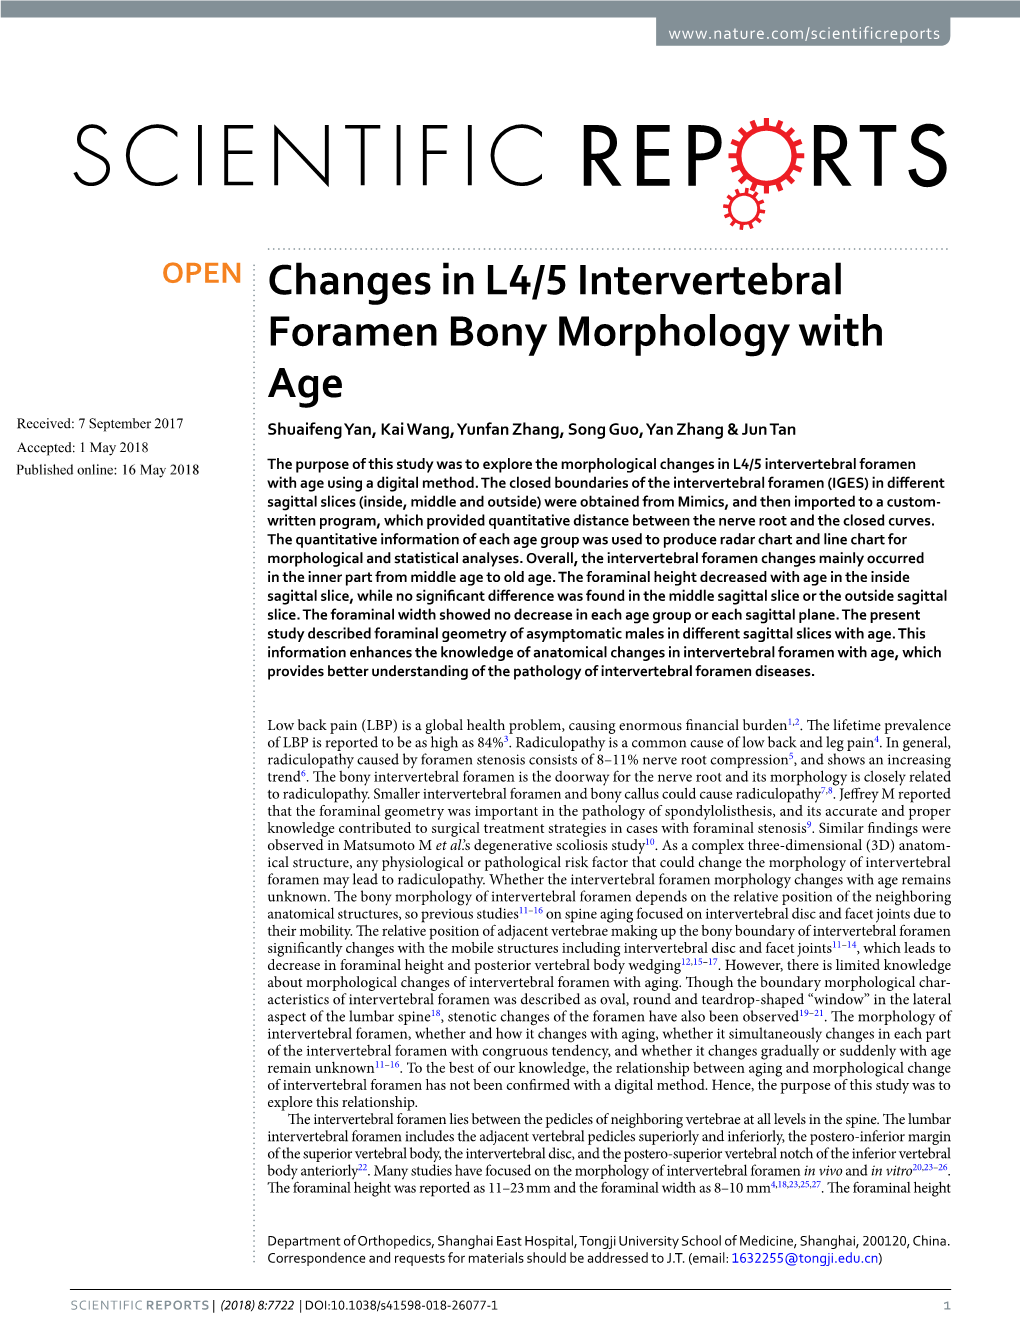 Changes in L4/5 Intervertebral Foramen Bony Morphology With